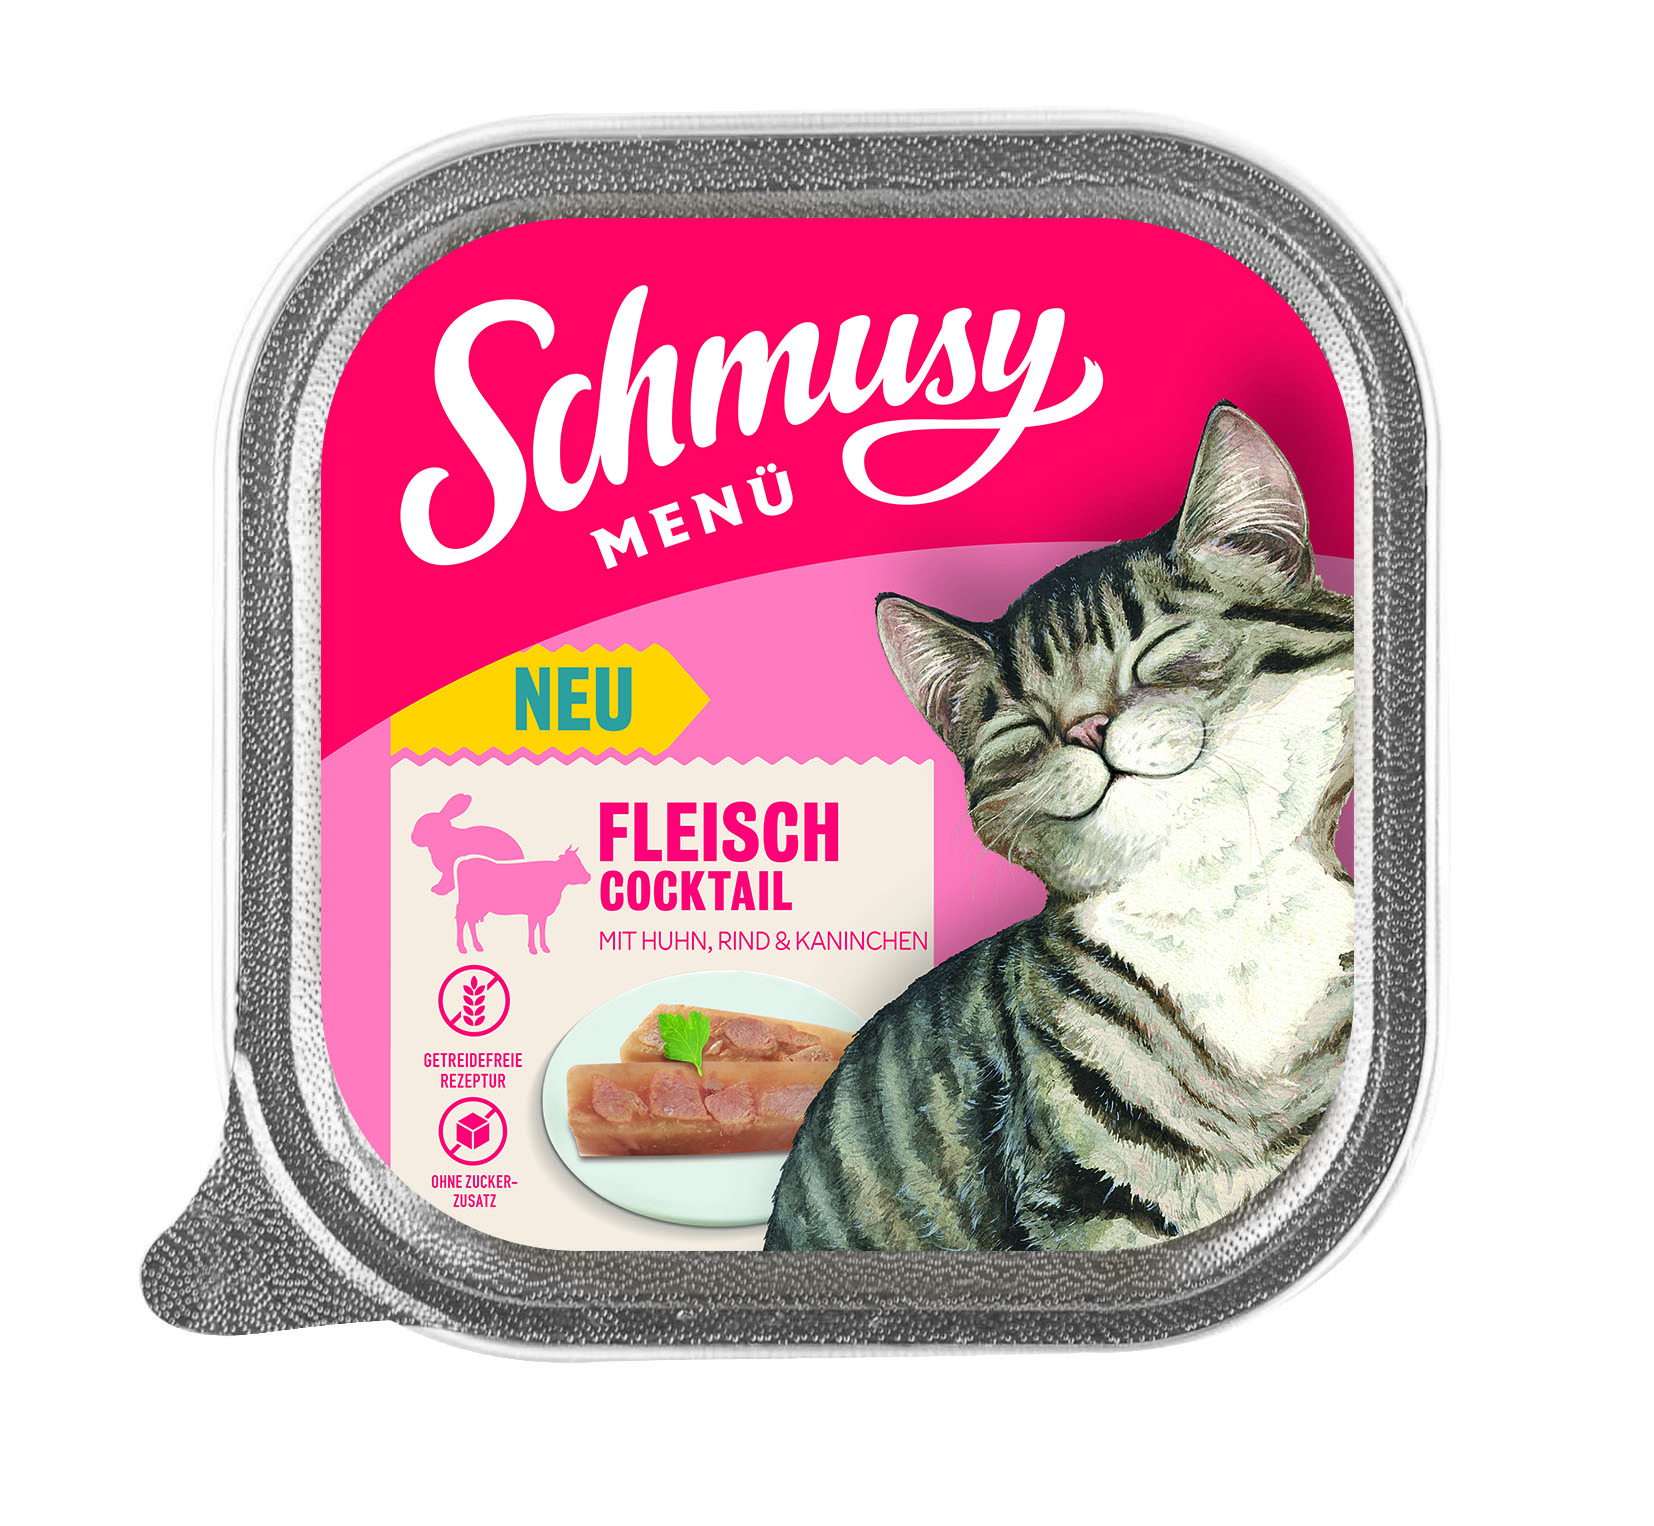 Schmusy Menü Fleischcocktail 100g